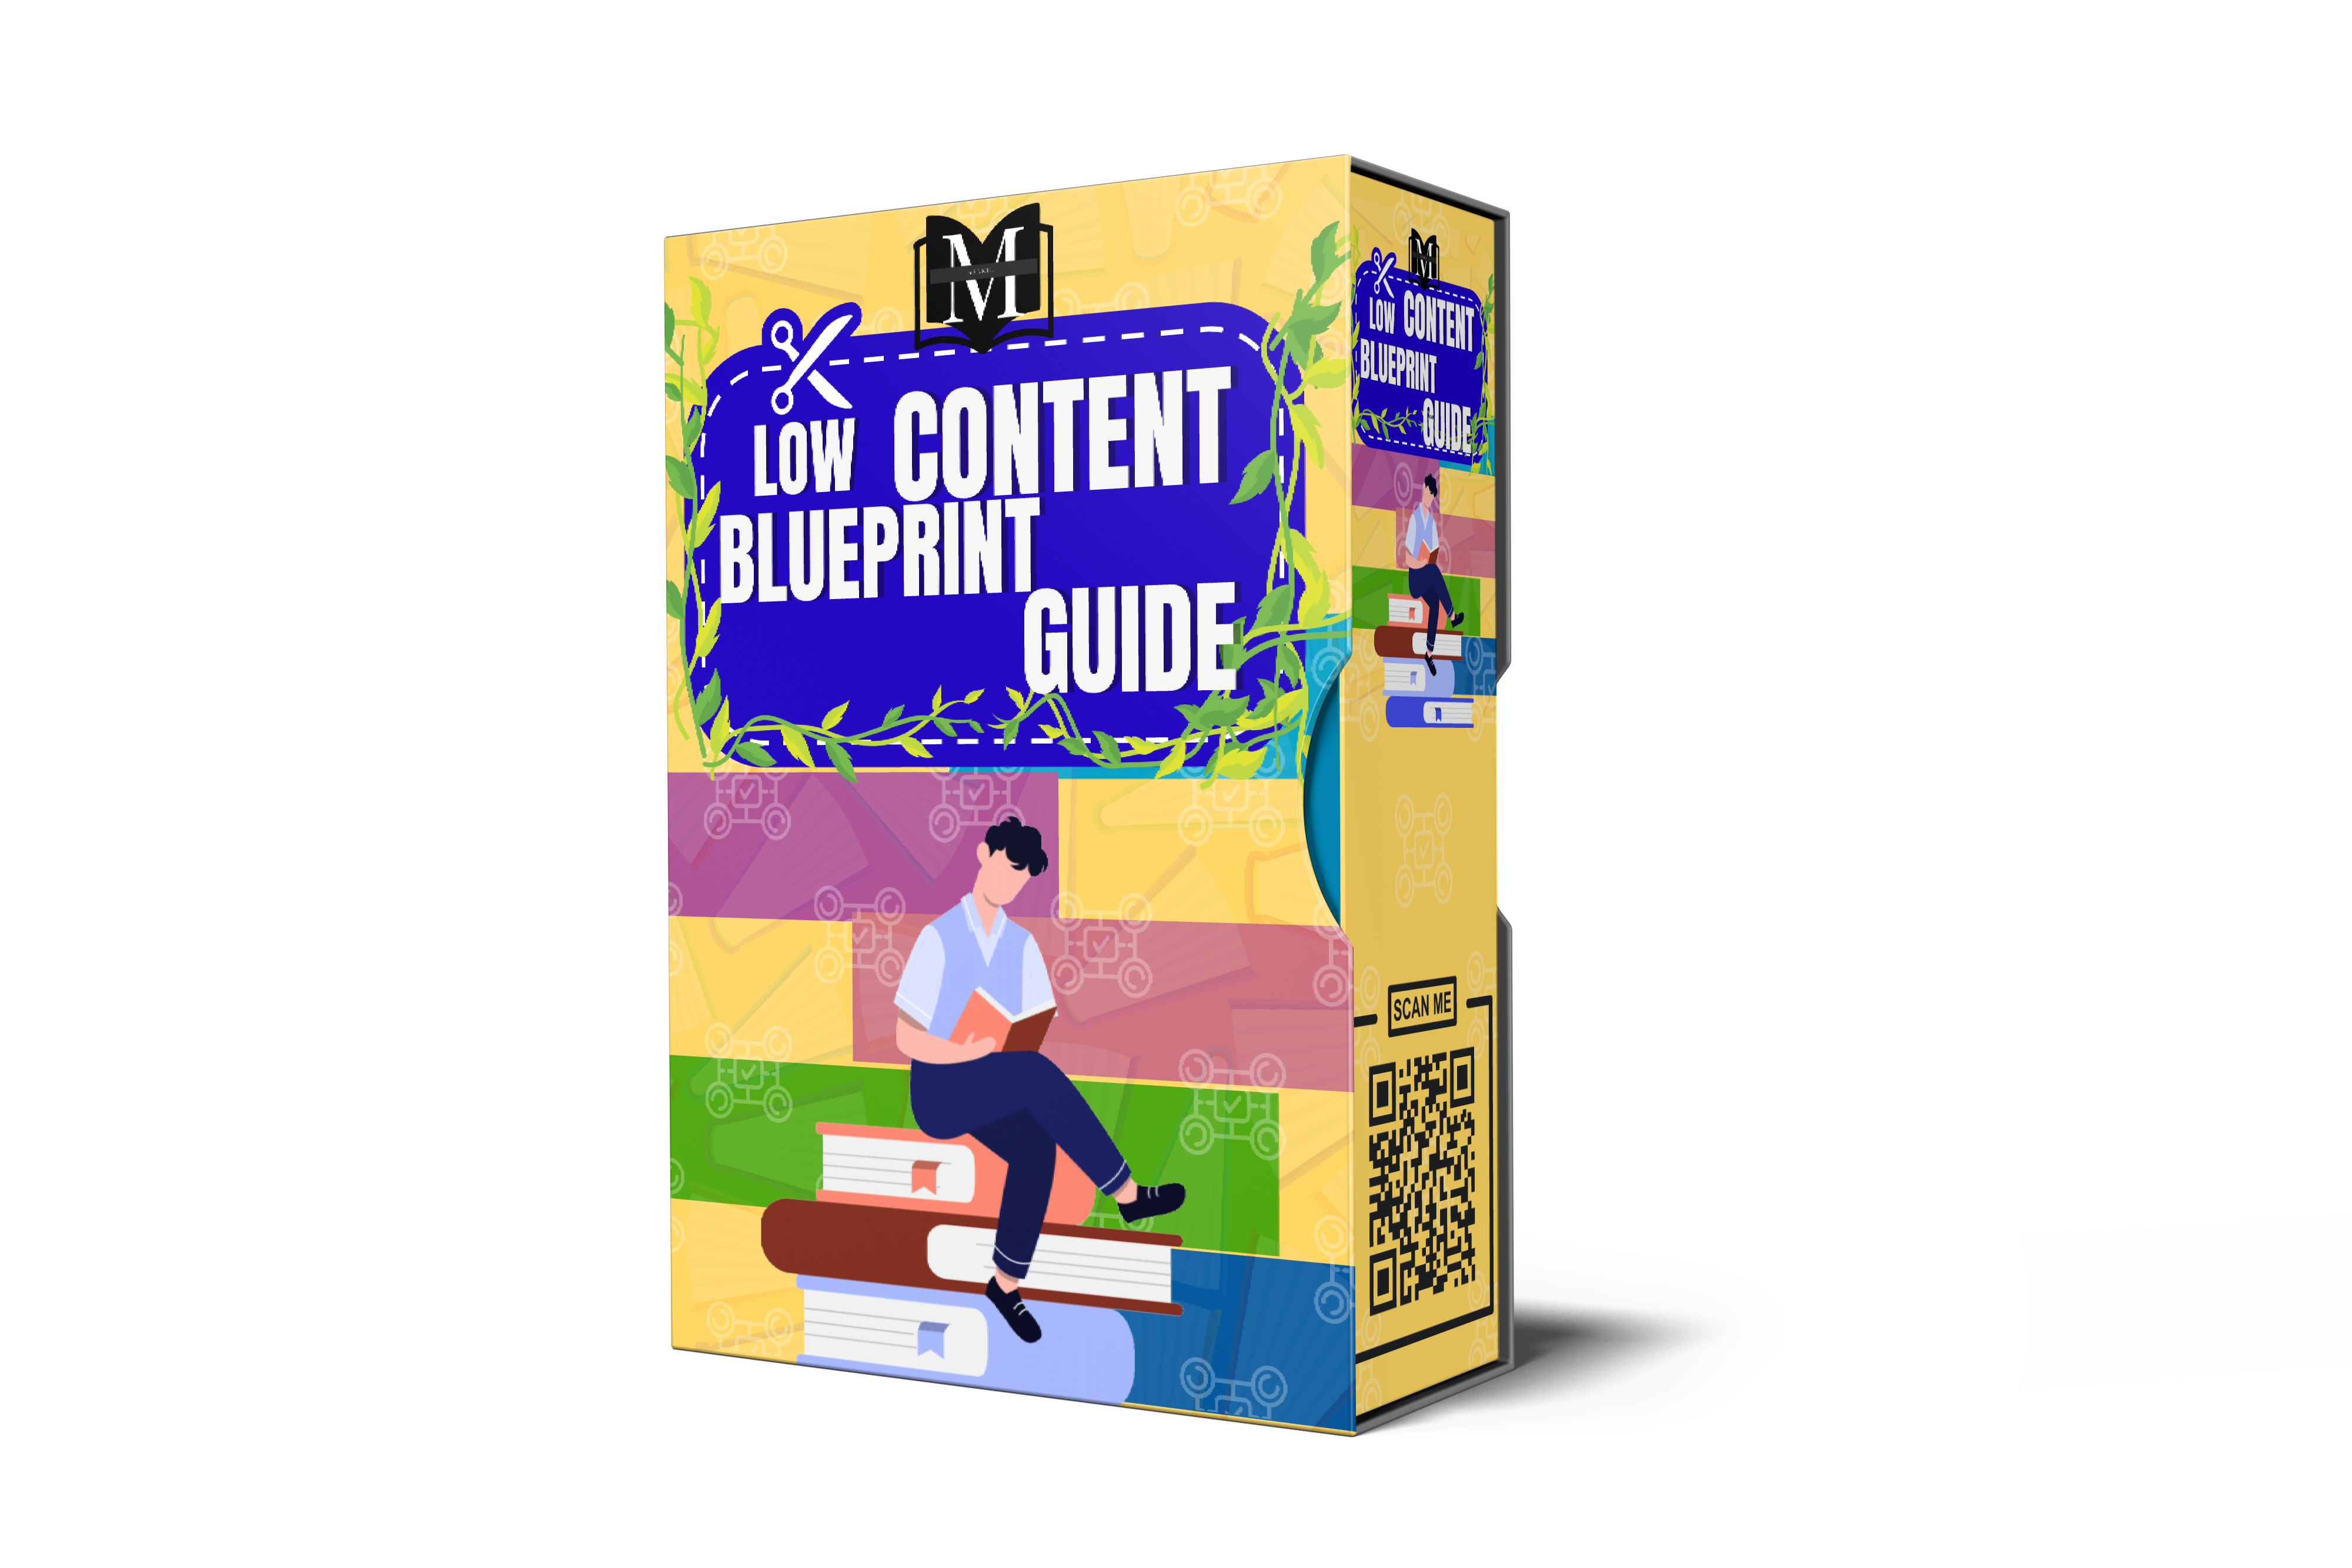 Low Content Blueprint Guide